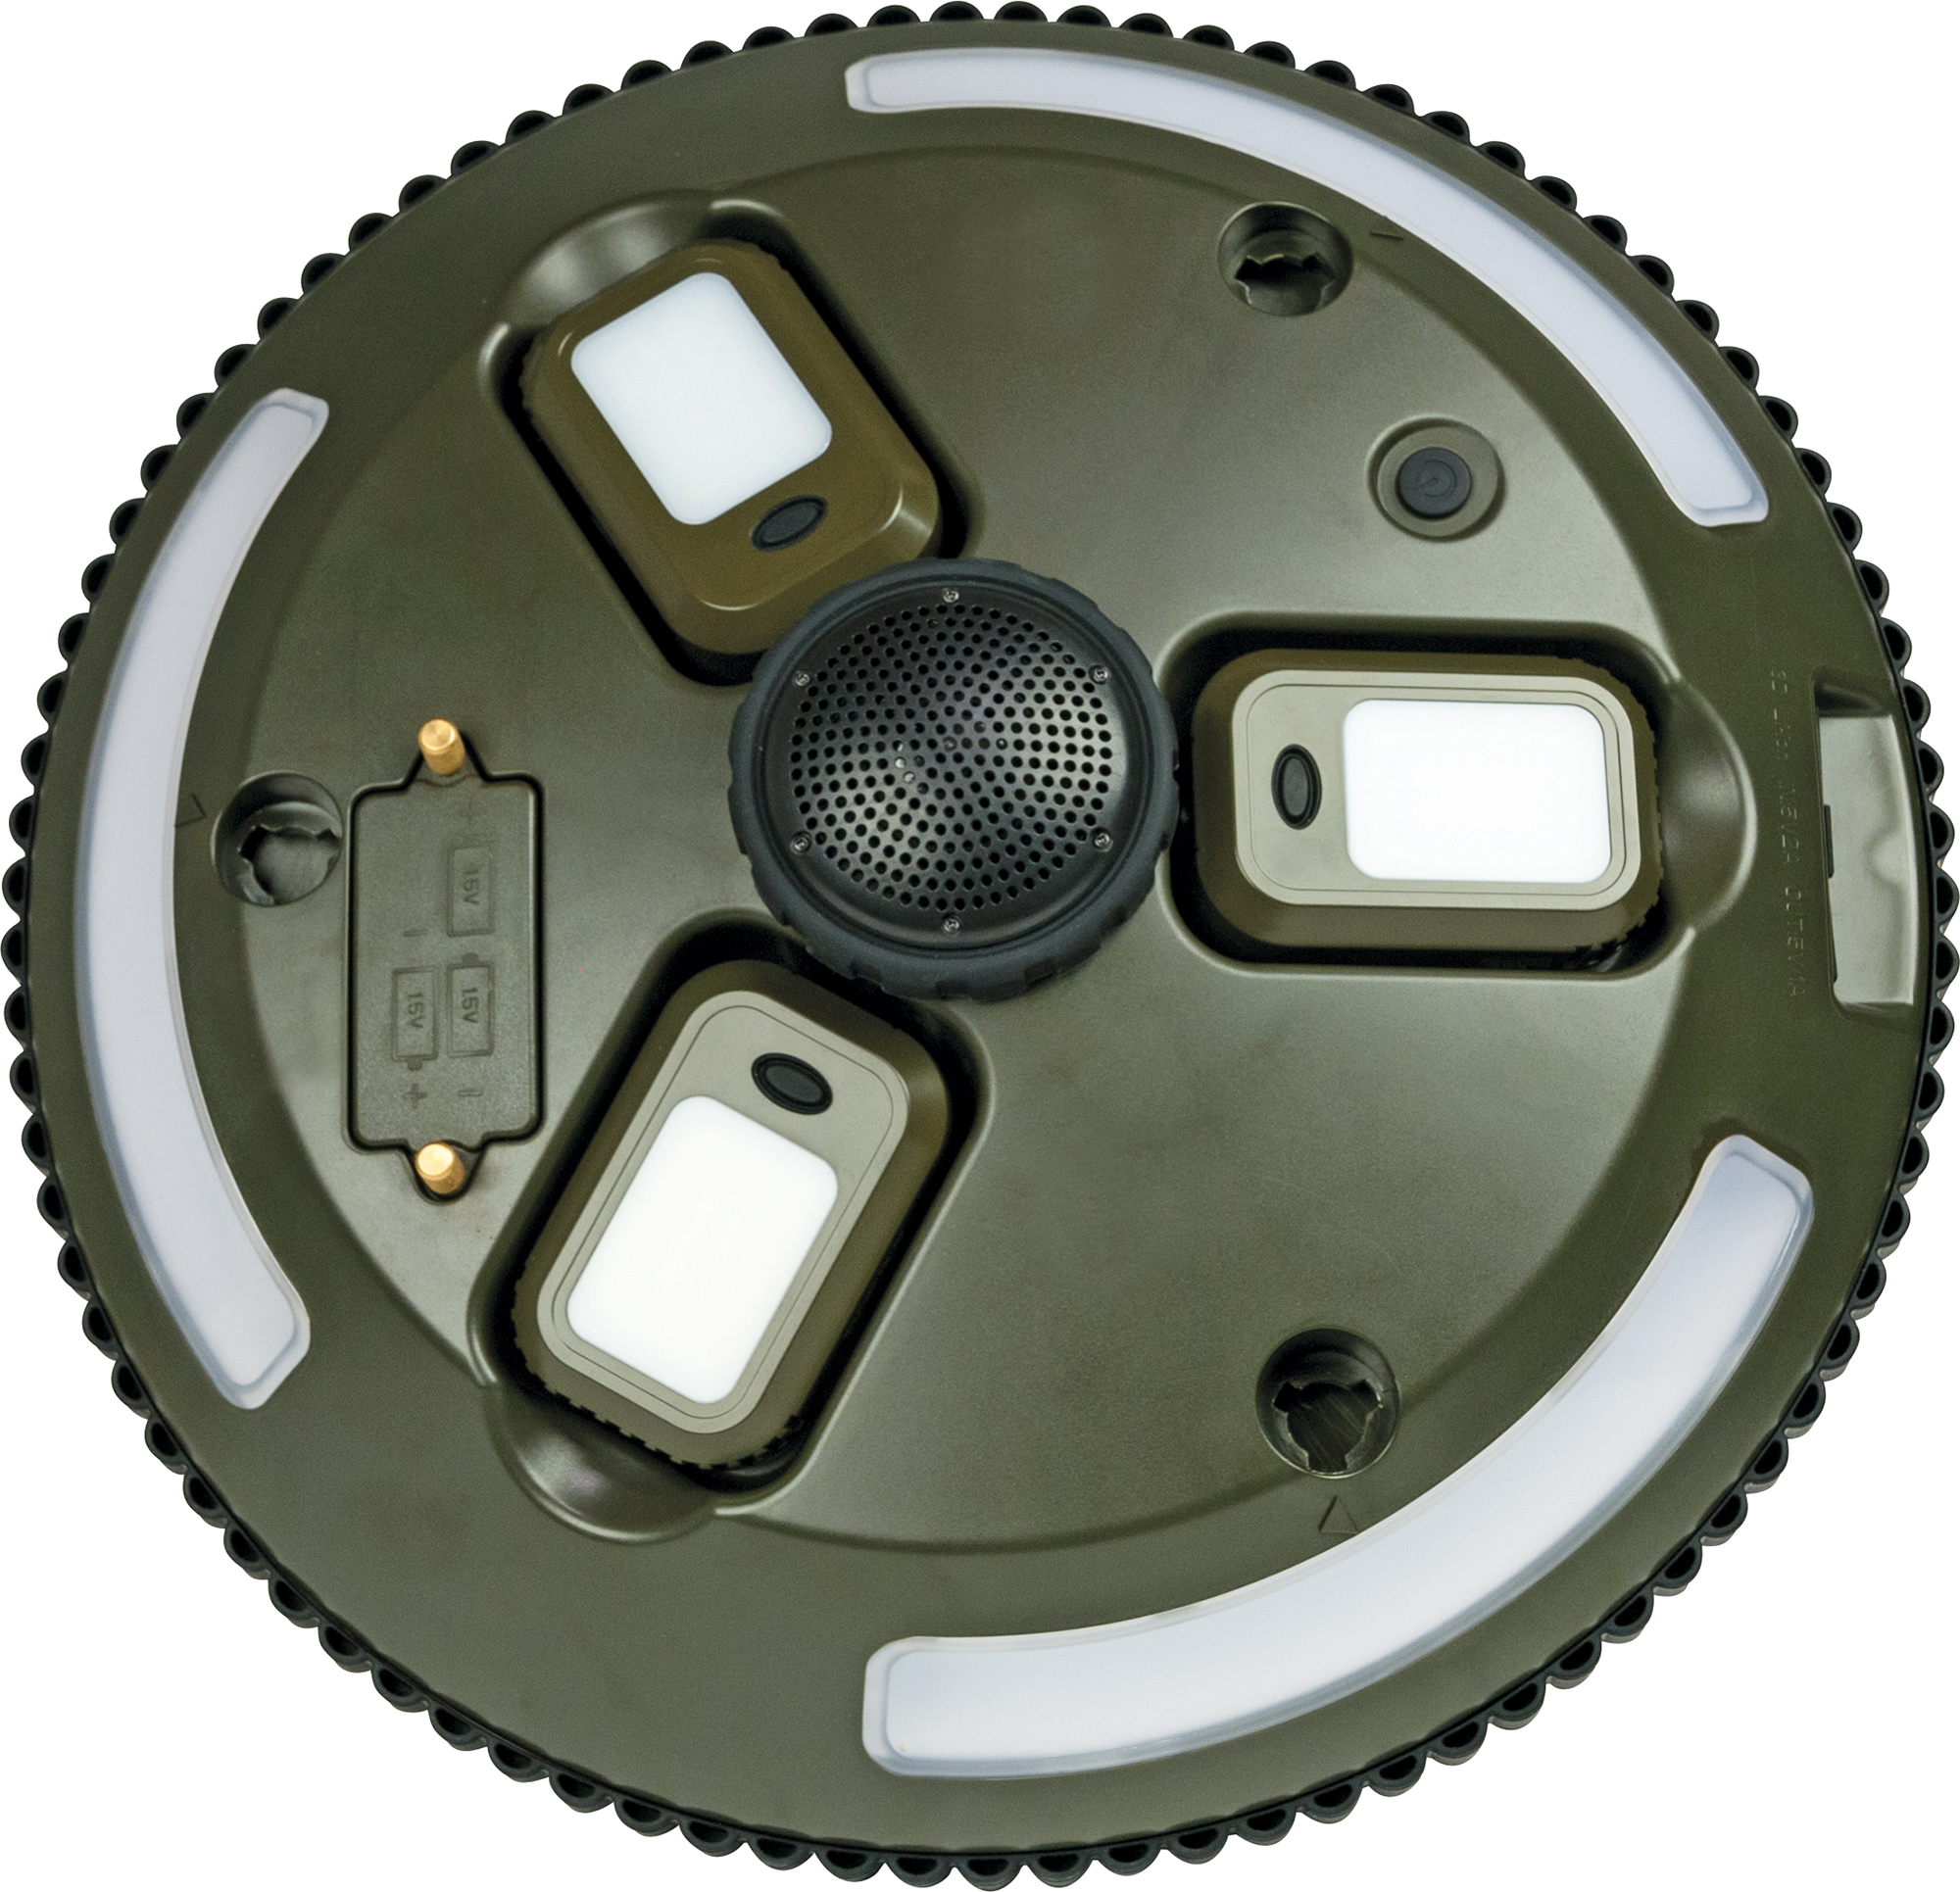 SCHWAIGER -CALED200 511- LED-Campingleuchte Bluetooth® auf abnehmbaren Stativ Lautsprecher Leuchten sowie mit